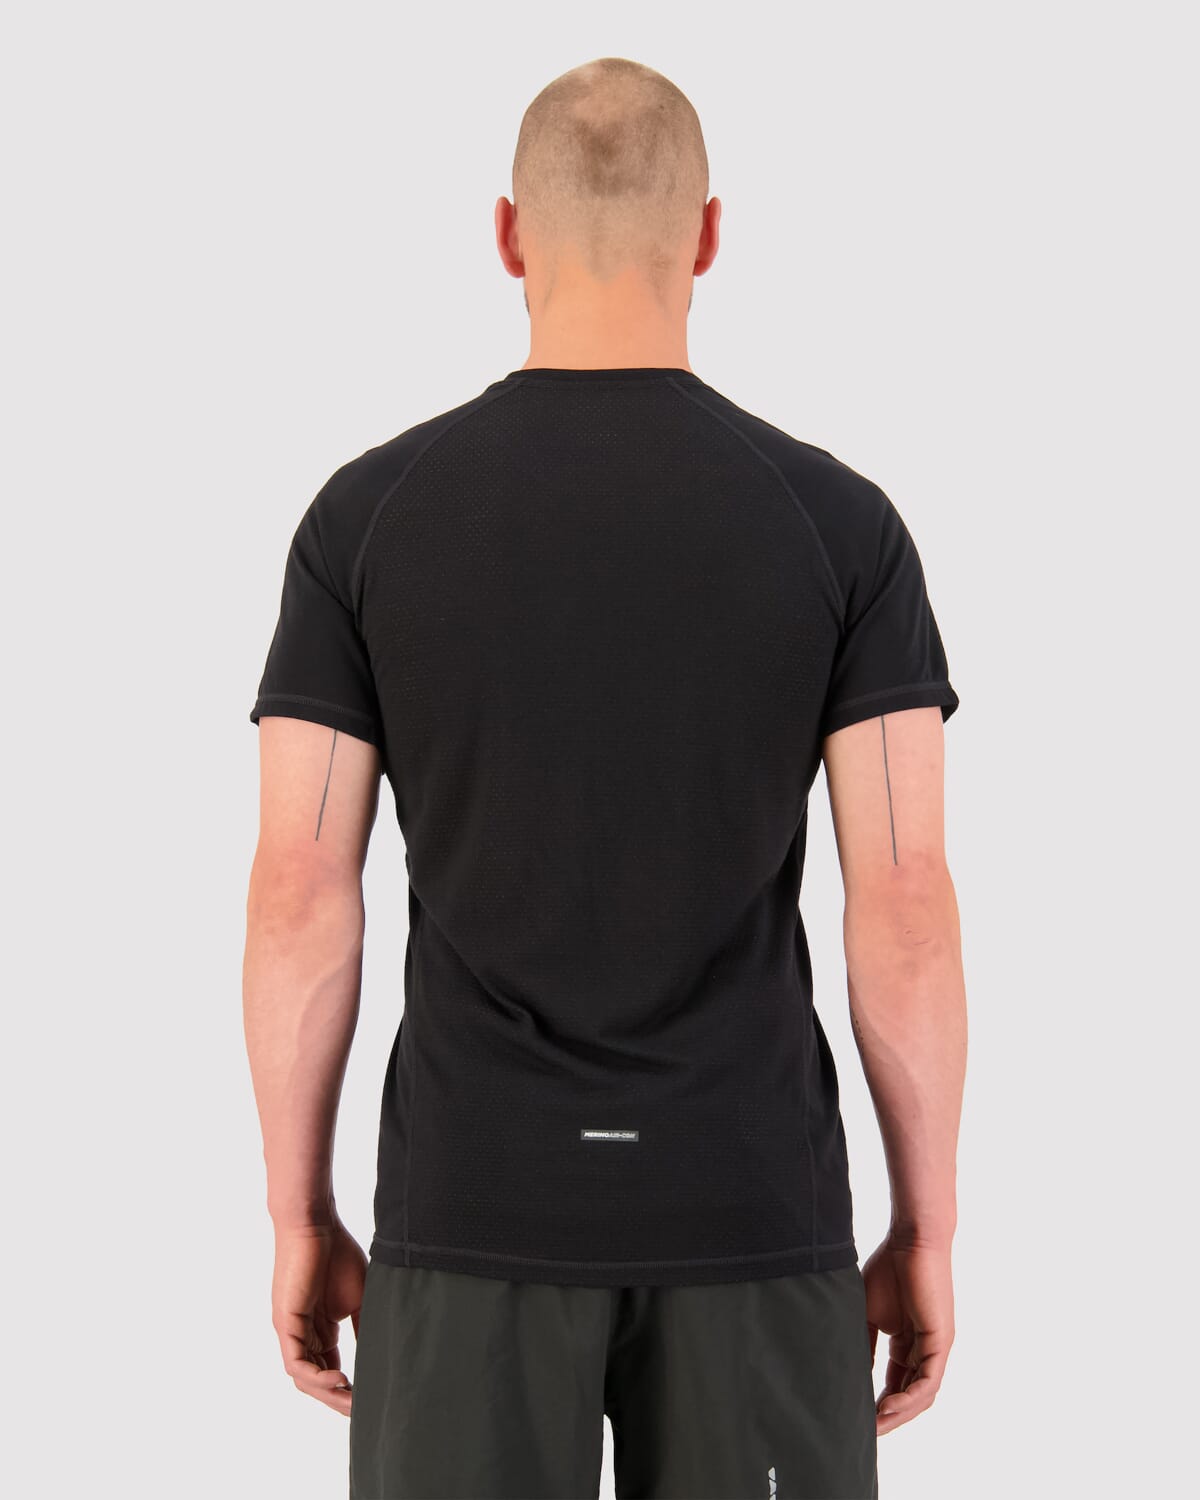 Temple Merino Air-Con T-Shirt - Black